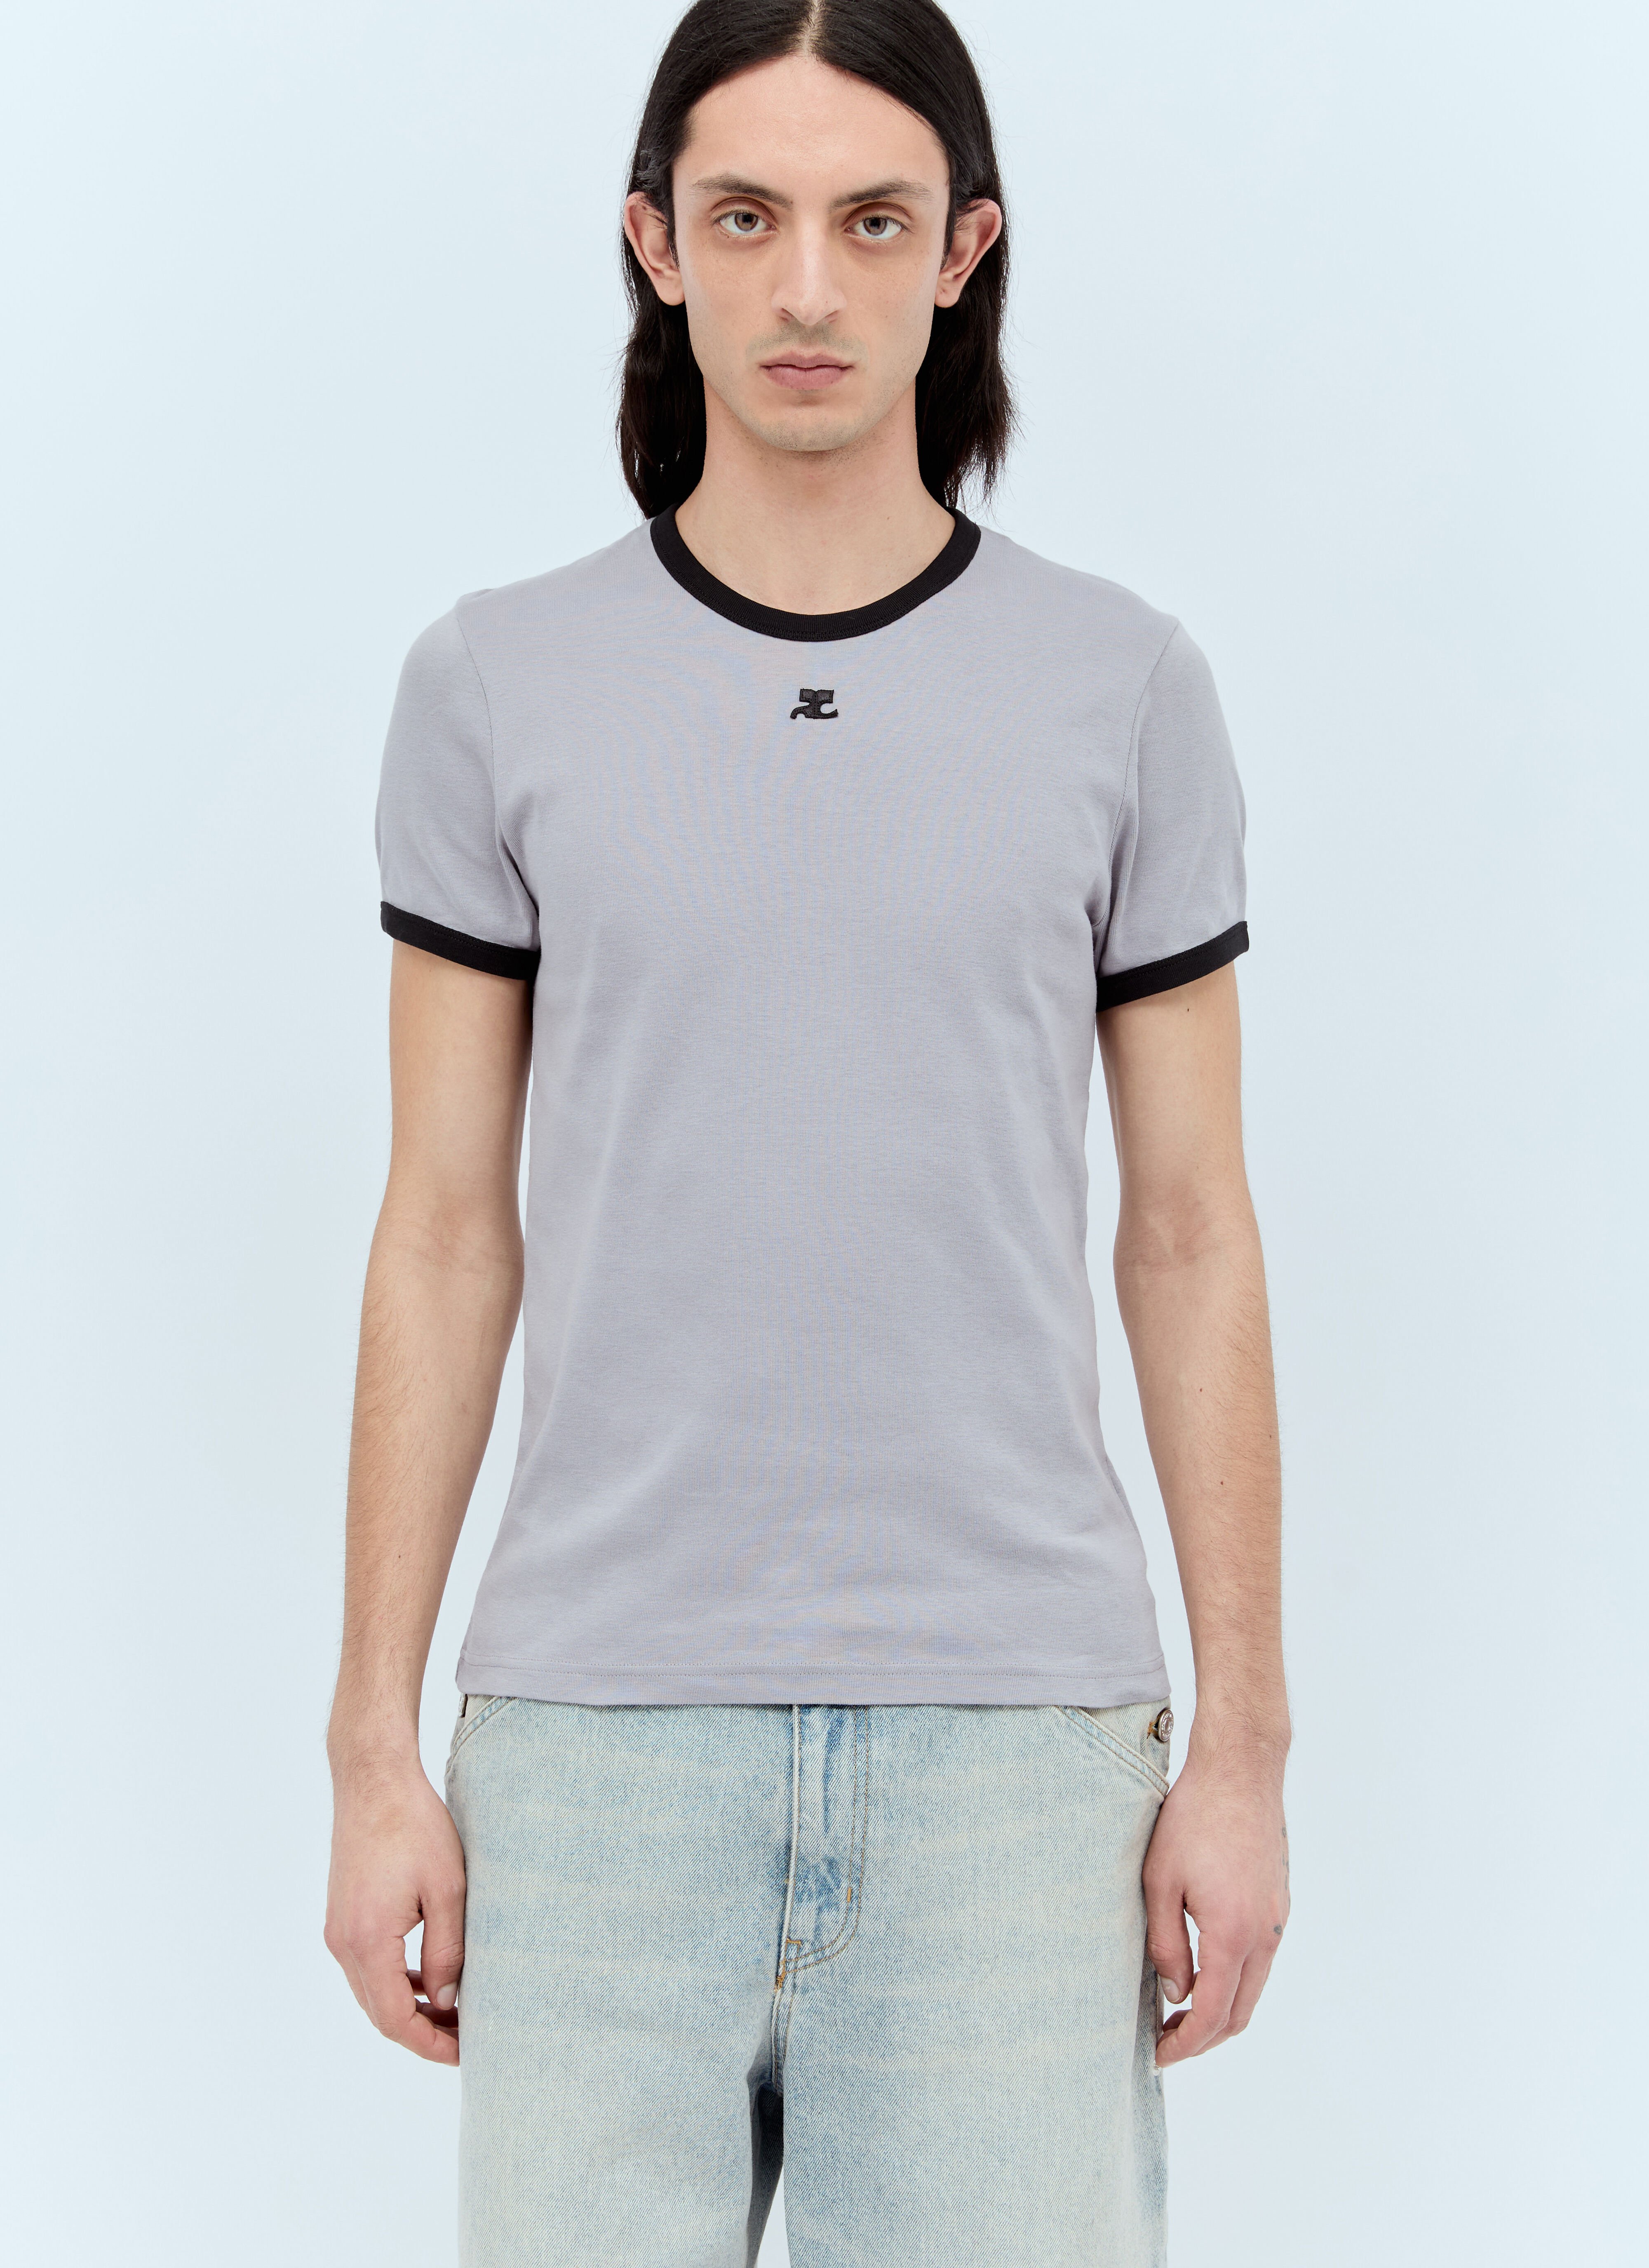 Courrèges Bumpy Contrast T-Shirt Grey cou0156001